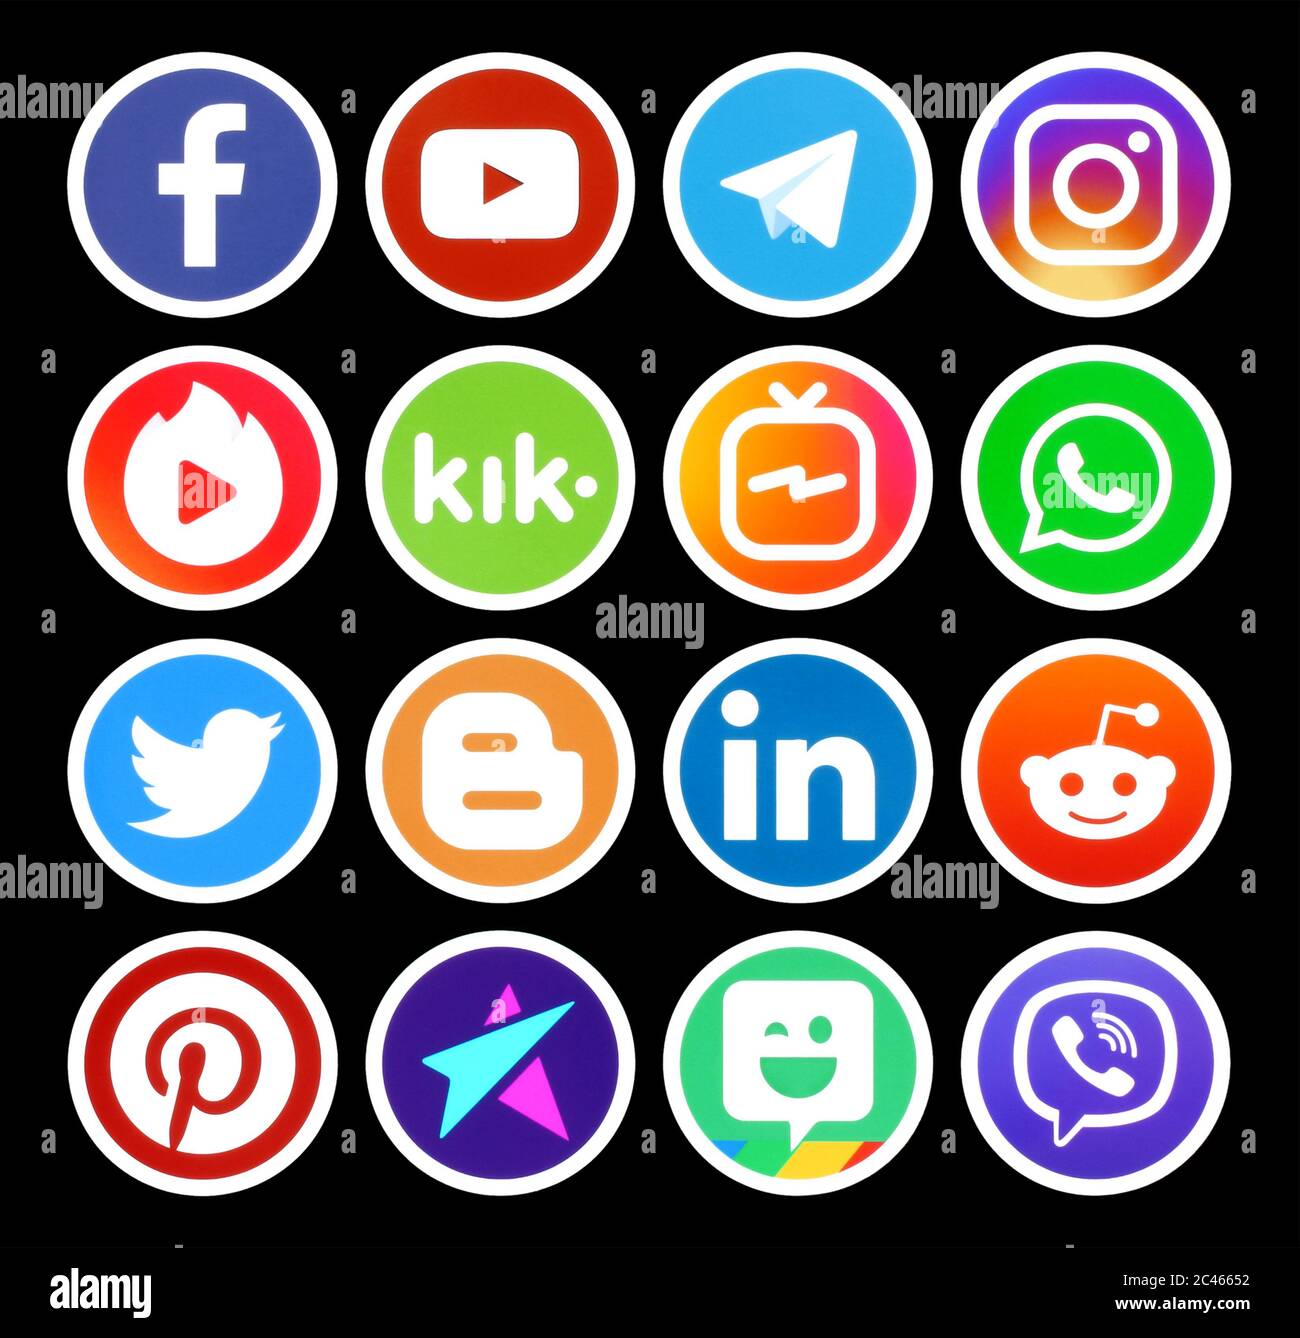 Kiev, Ukraine - 01 mars 2019: Icônes de médias sociaux de cercle populaire avec bordure blanche sur fond noir imprimé sur le papier: Facebook, Twitter, Instagram, P Banque D'Images